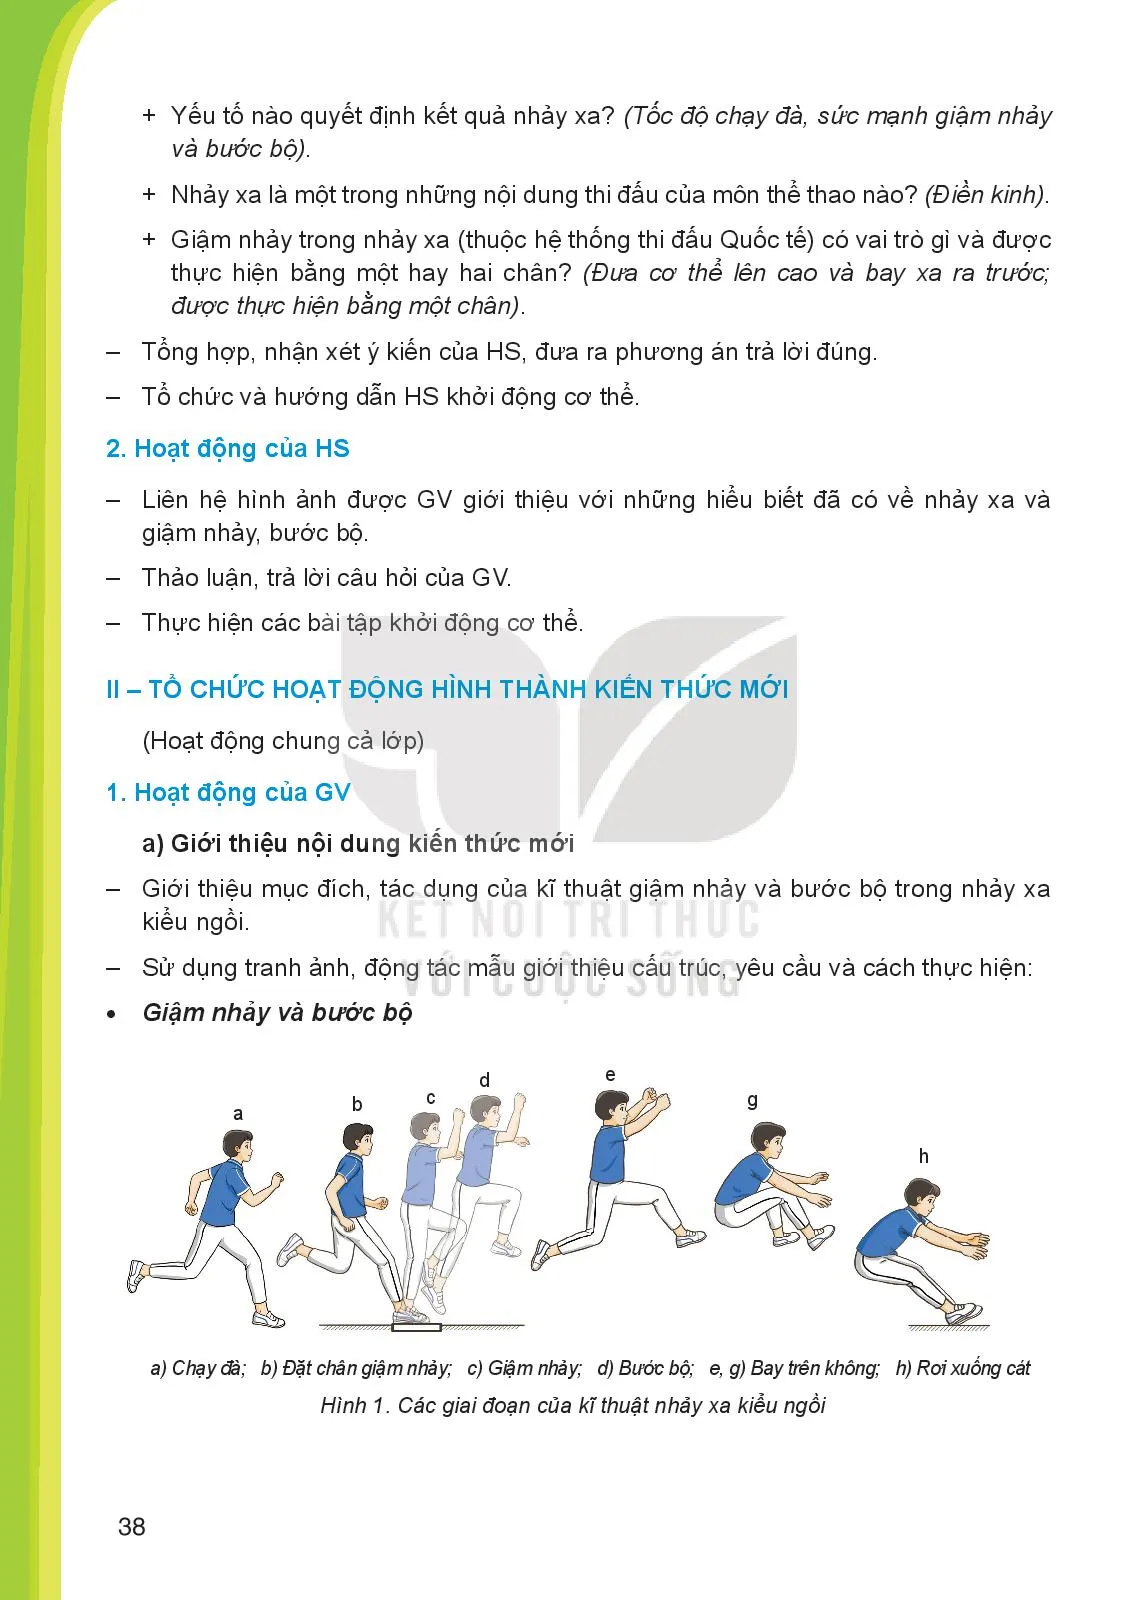 Bài 1. Kĩ thuật giậm nhảy và bước bộ